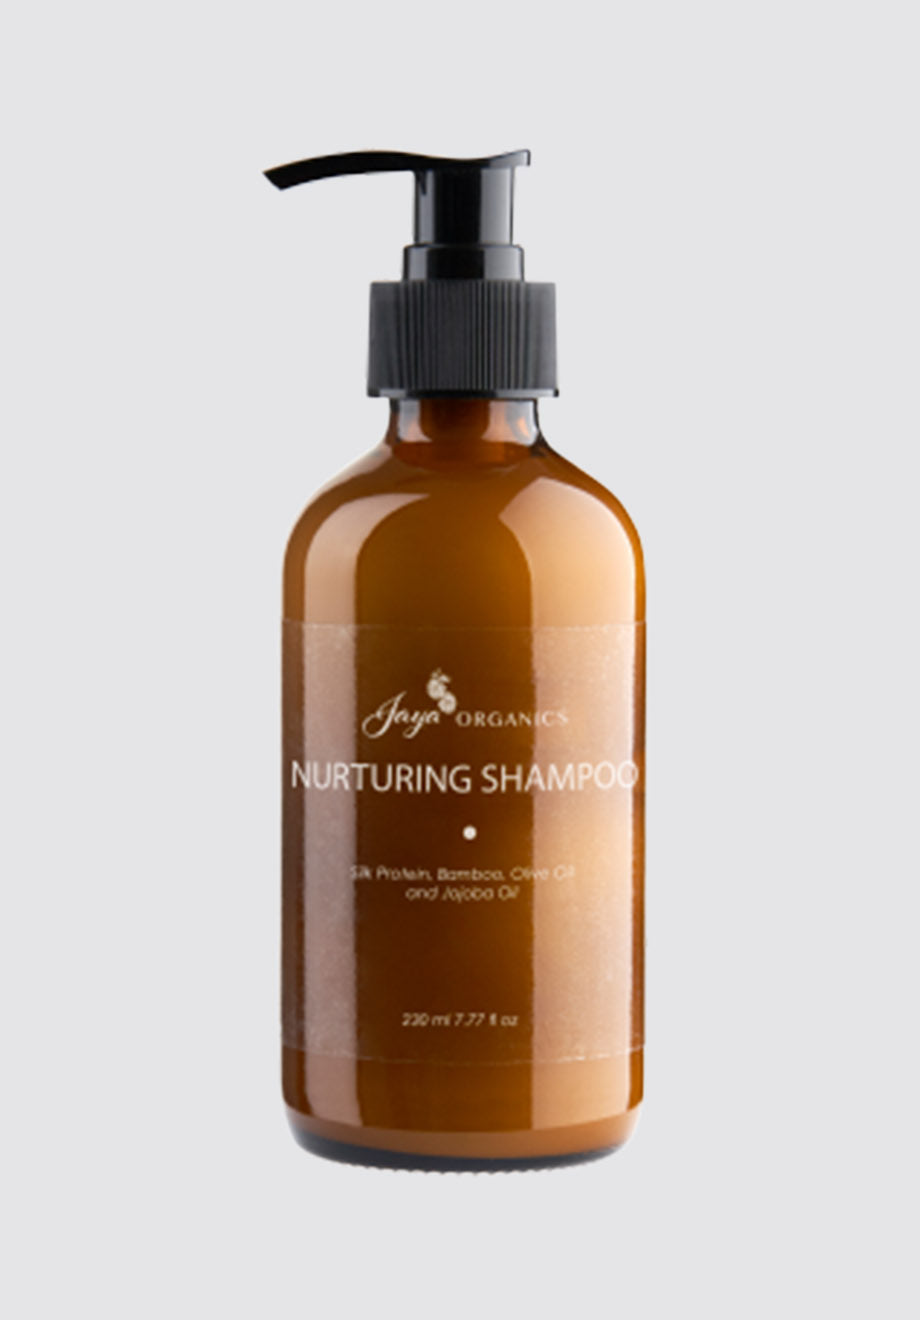 Nurturing Shampoo